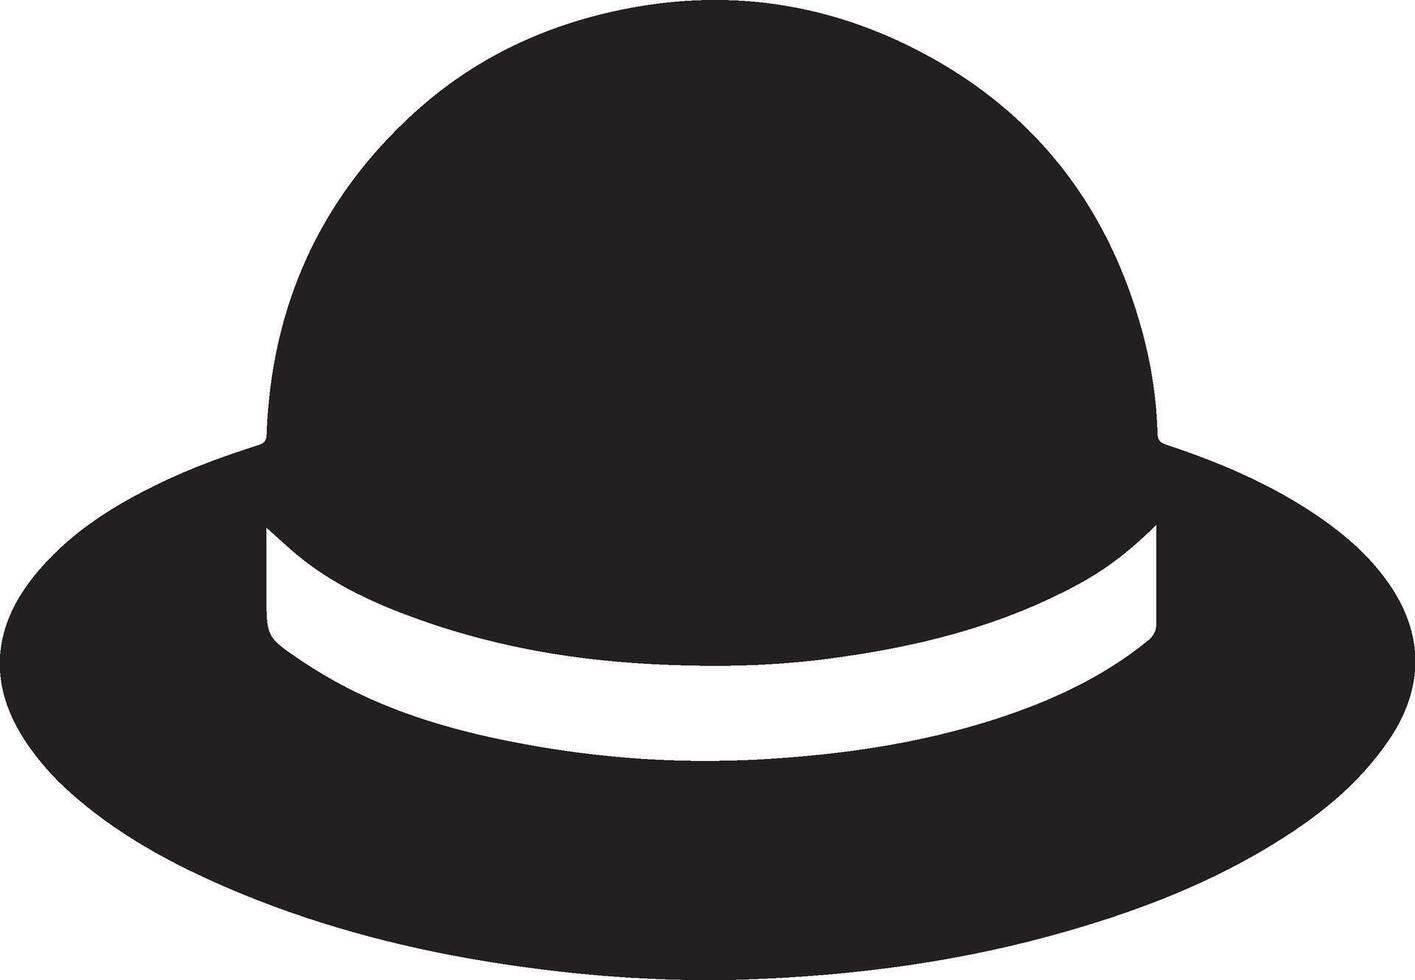 minimal Retro Hat icon, clipart, symbol, black color silhouette 6 vector